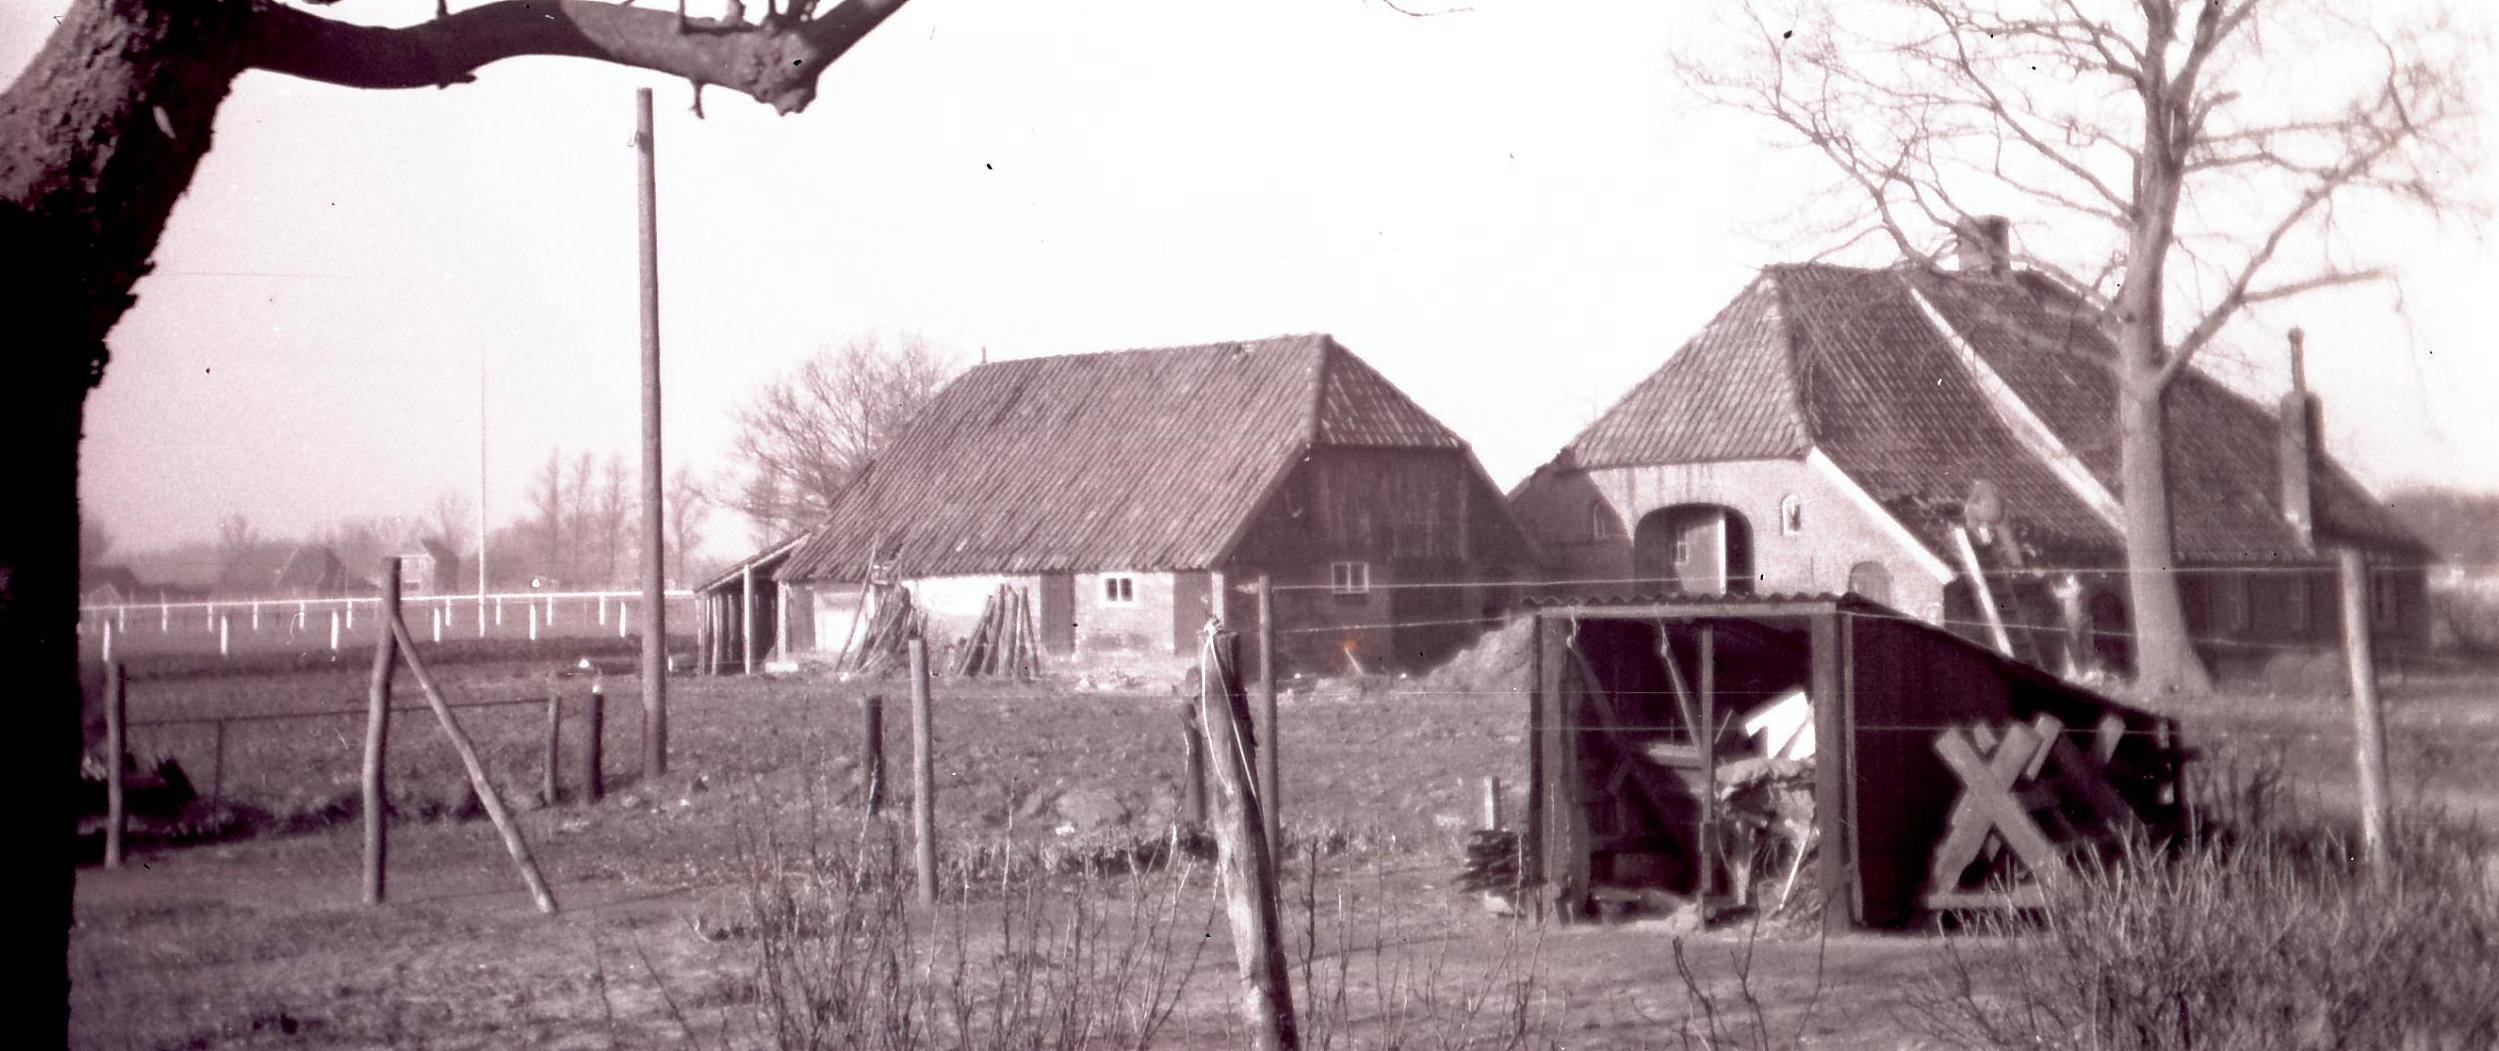 Bewoners van Eskes in de twintigste eeuw. Gedurende de twintigste eeuw, tot aan de afbraak, wordt het boerderijtje Eskes bewoond door de familie Stikkers. In 1954 woont de familie R.